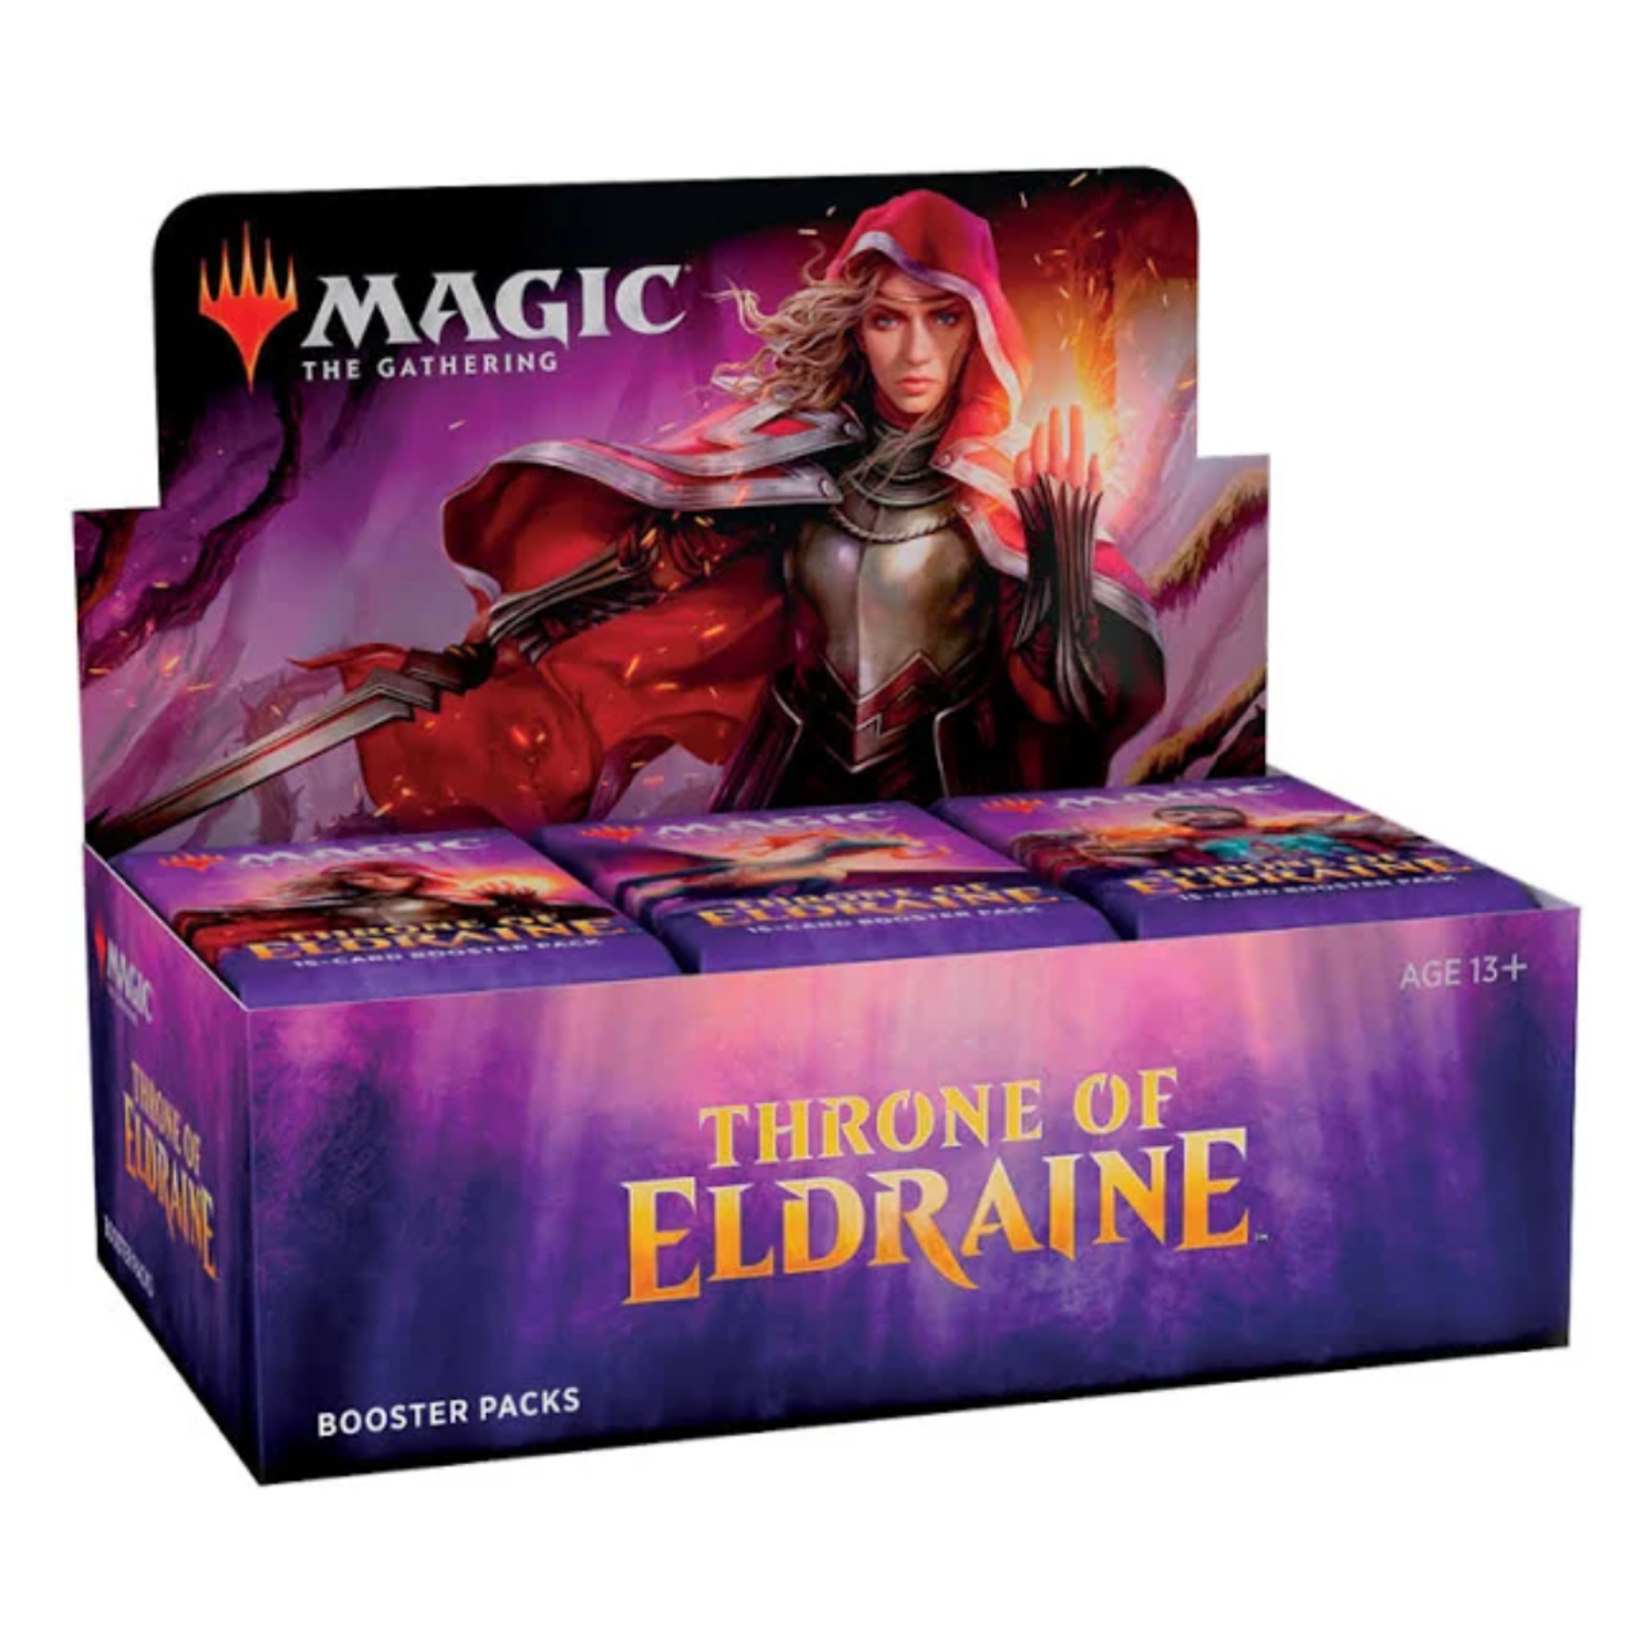 Throne of Eldraine - Booster Box